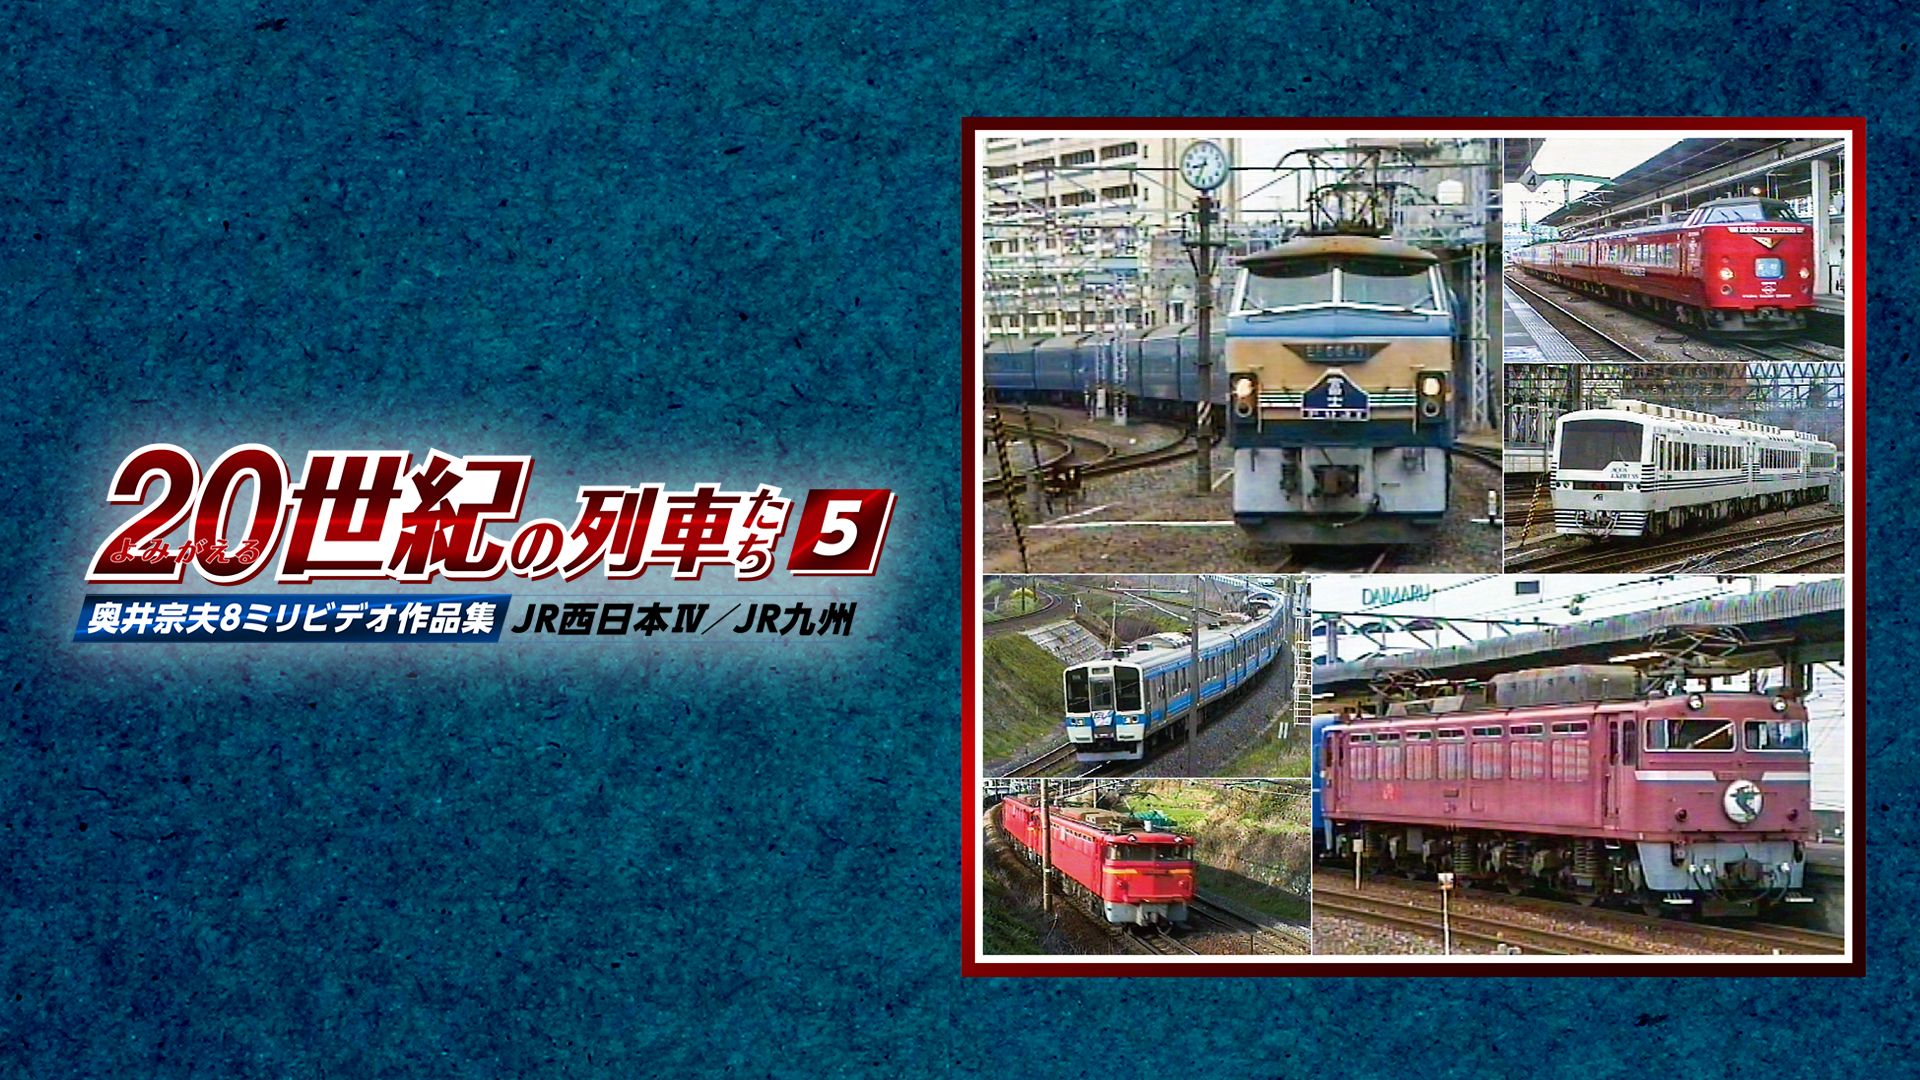 よみがえる20世紀の列車たち5JR西日本